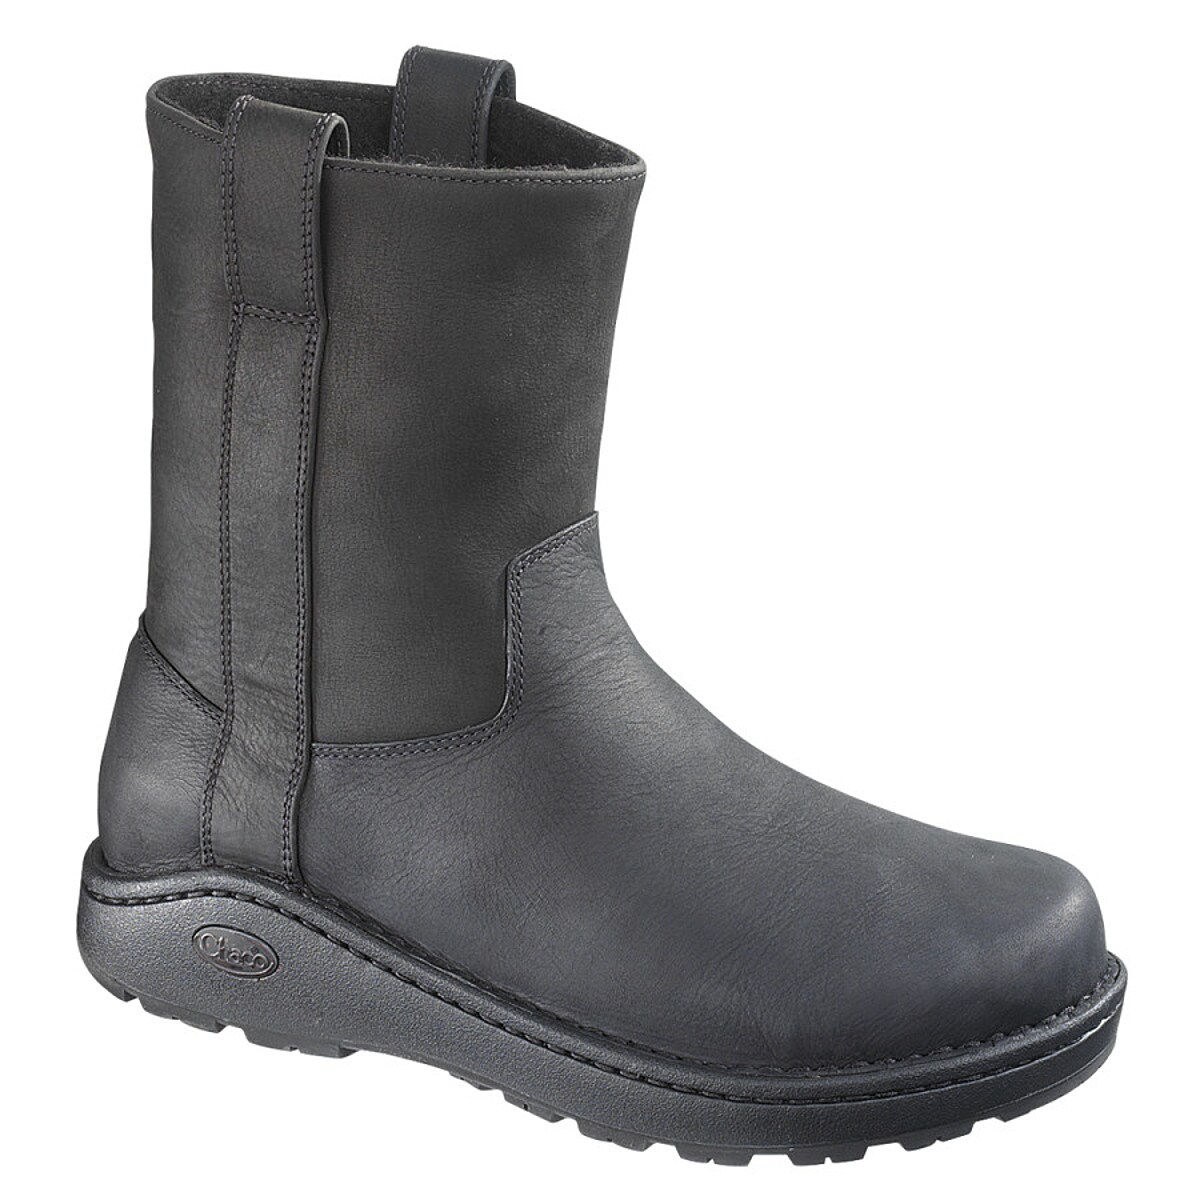 Chaco Credence Wool Waterproof Boot - Men's - Footwear